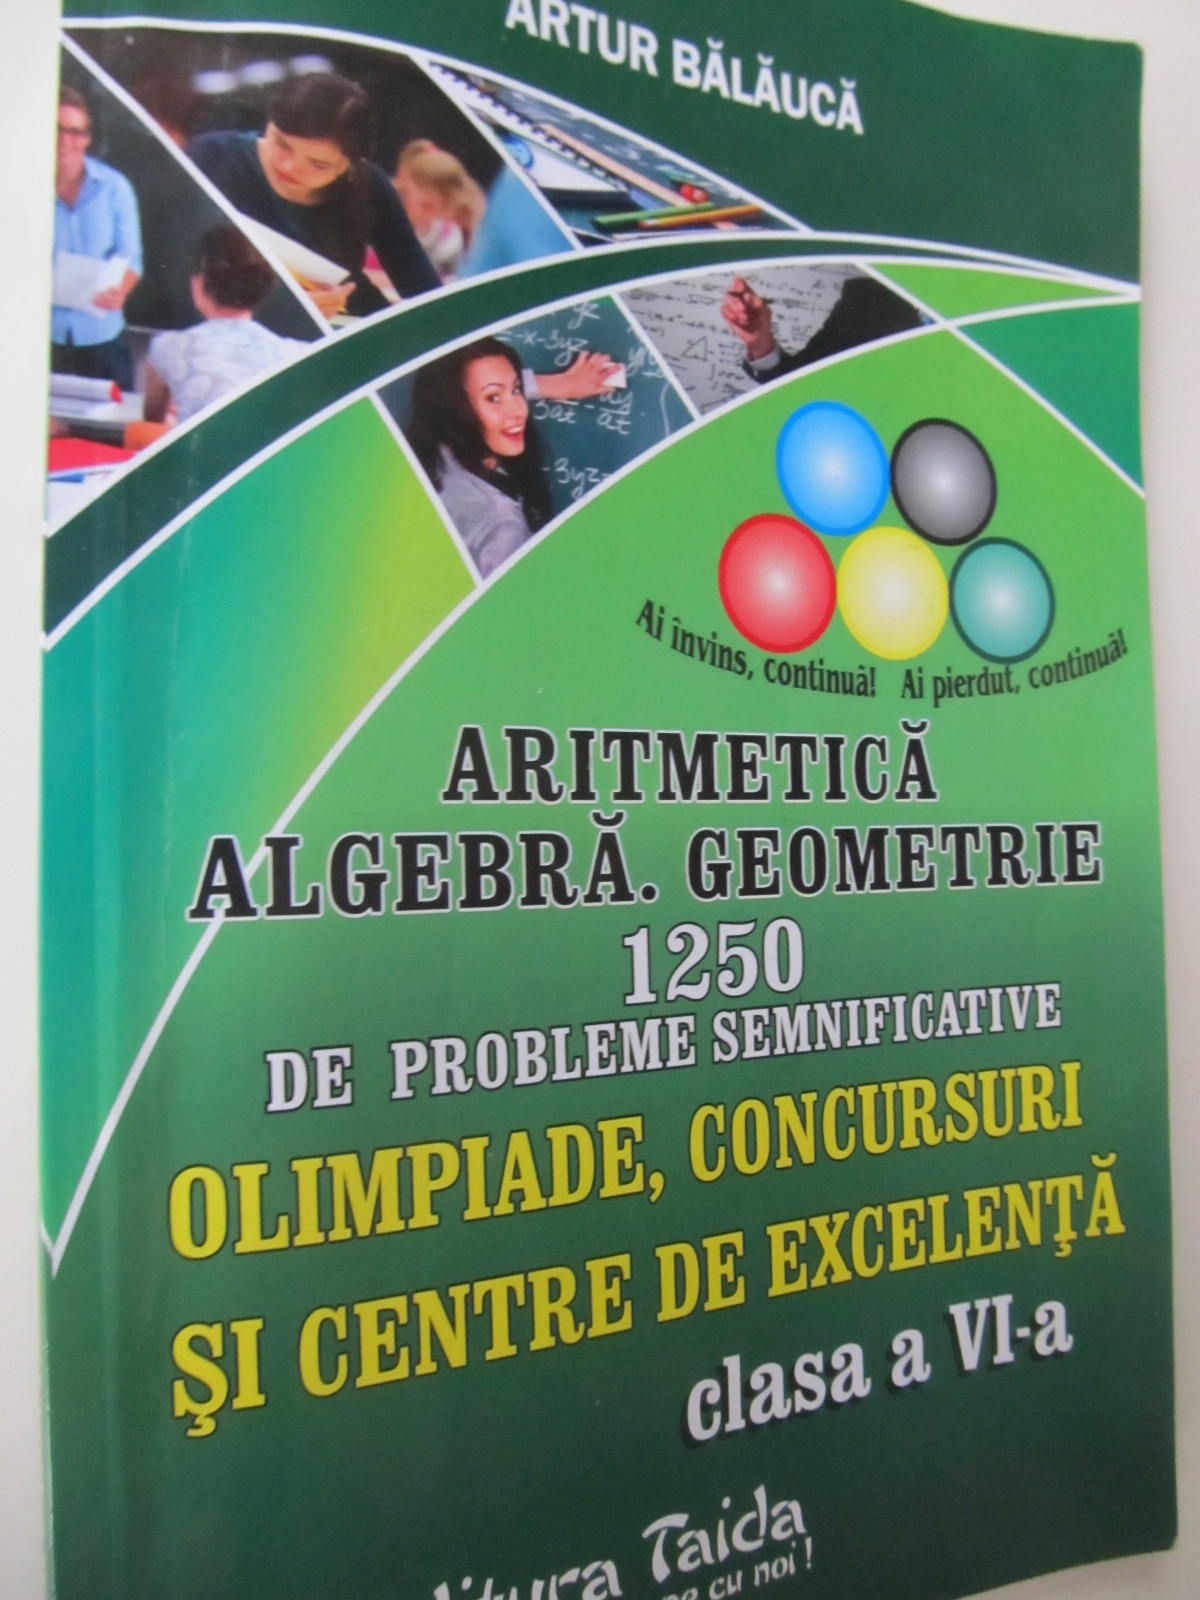 Aritmetica Algebra Geometrie 1250 de probleme semnificative Olimpiade Concursuri si Centre de excelenta clasa a VI-a - Artur Balauca | Detalii carte